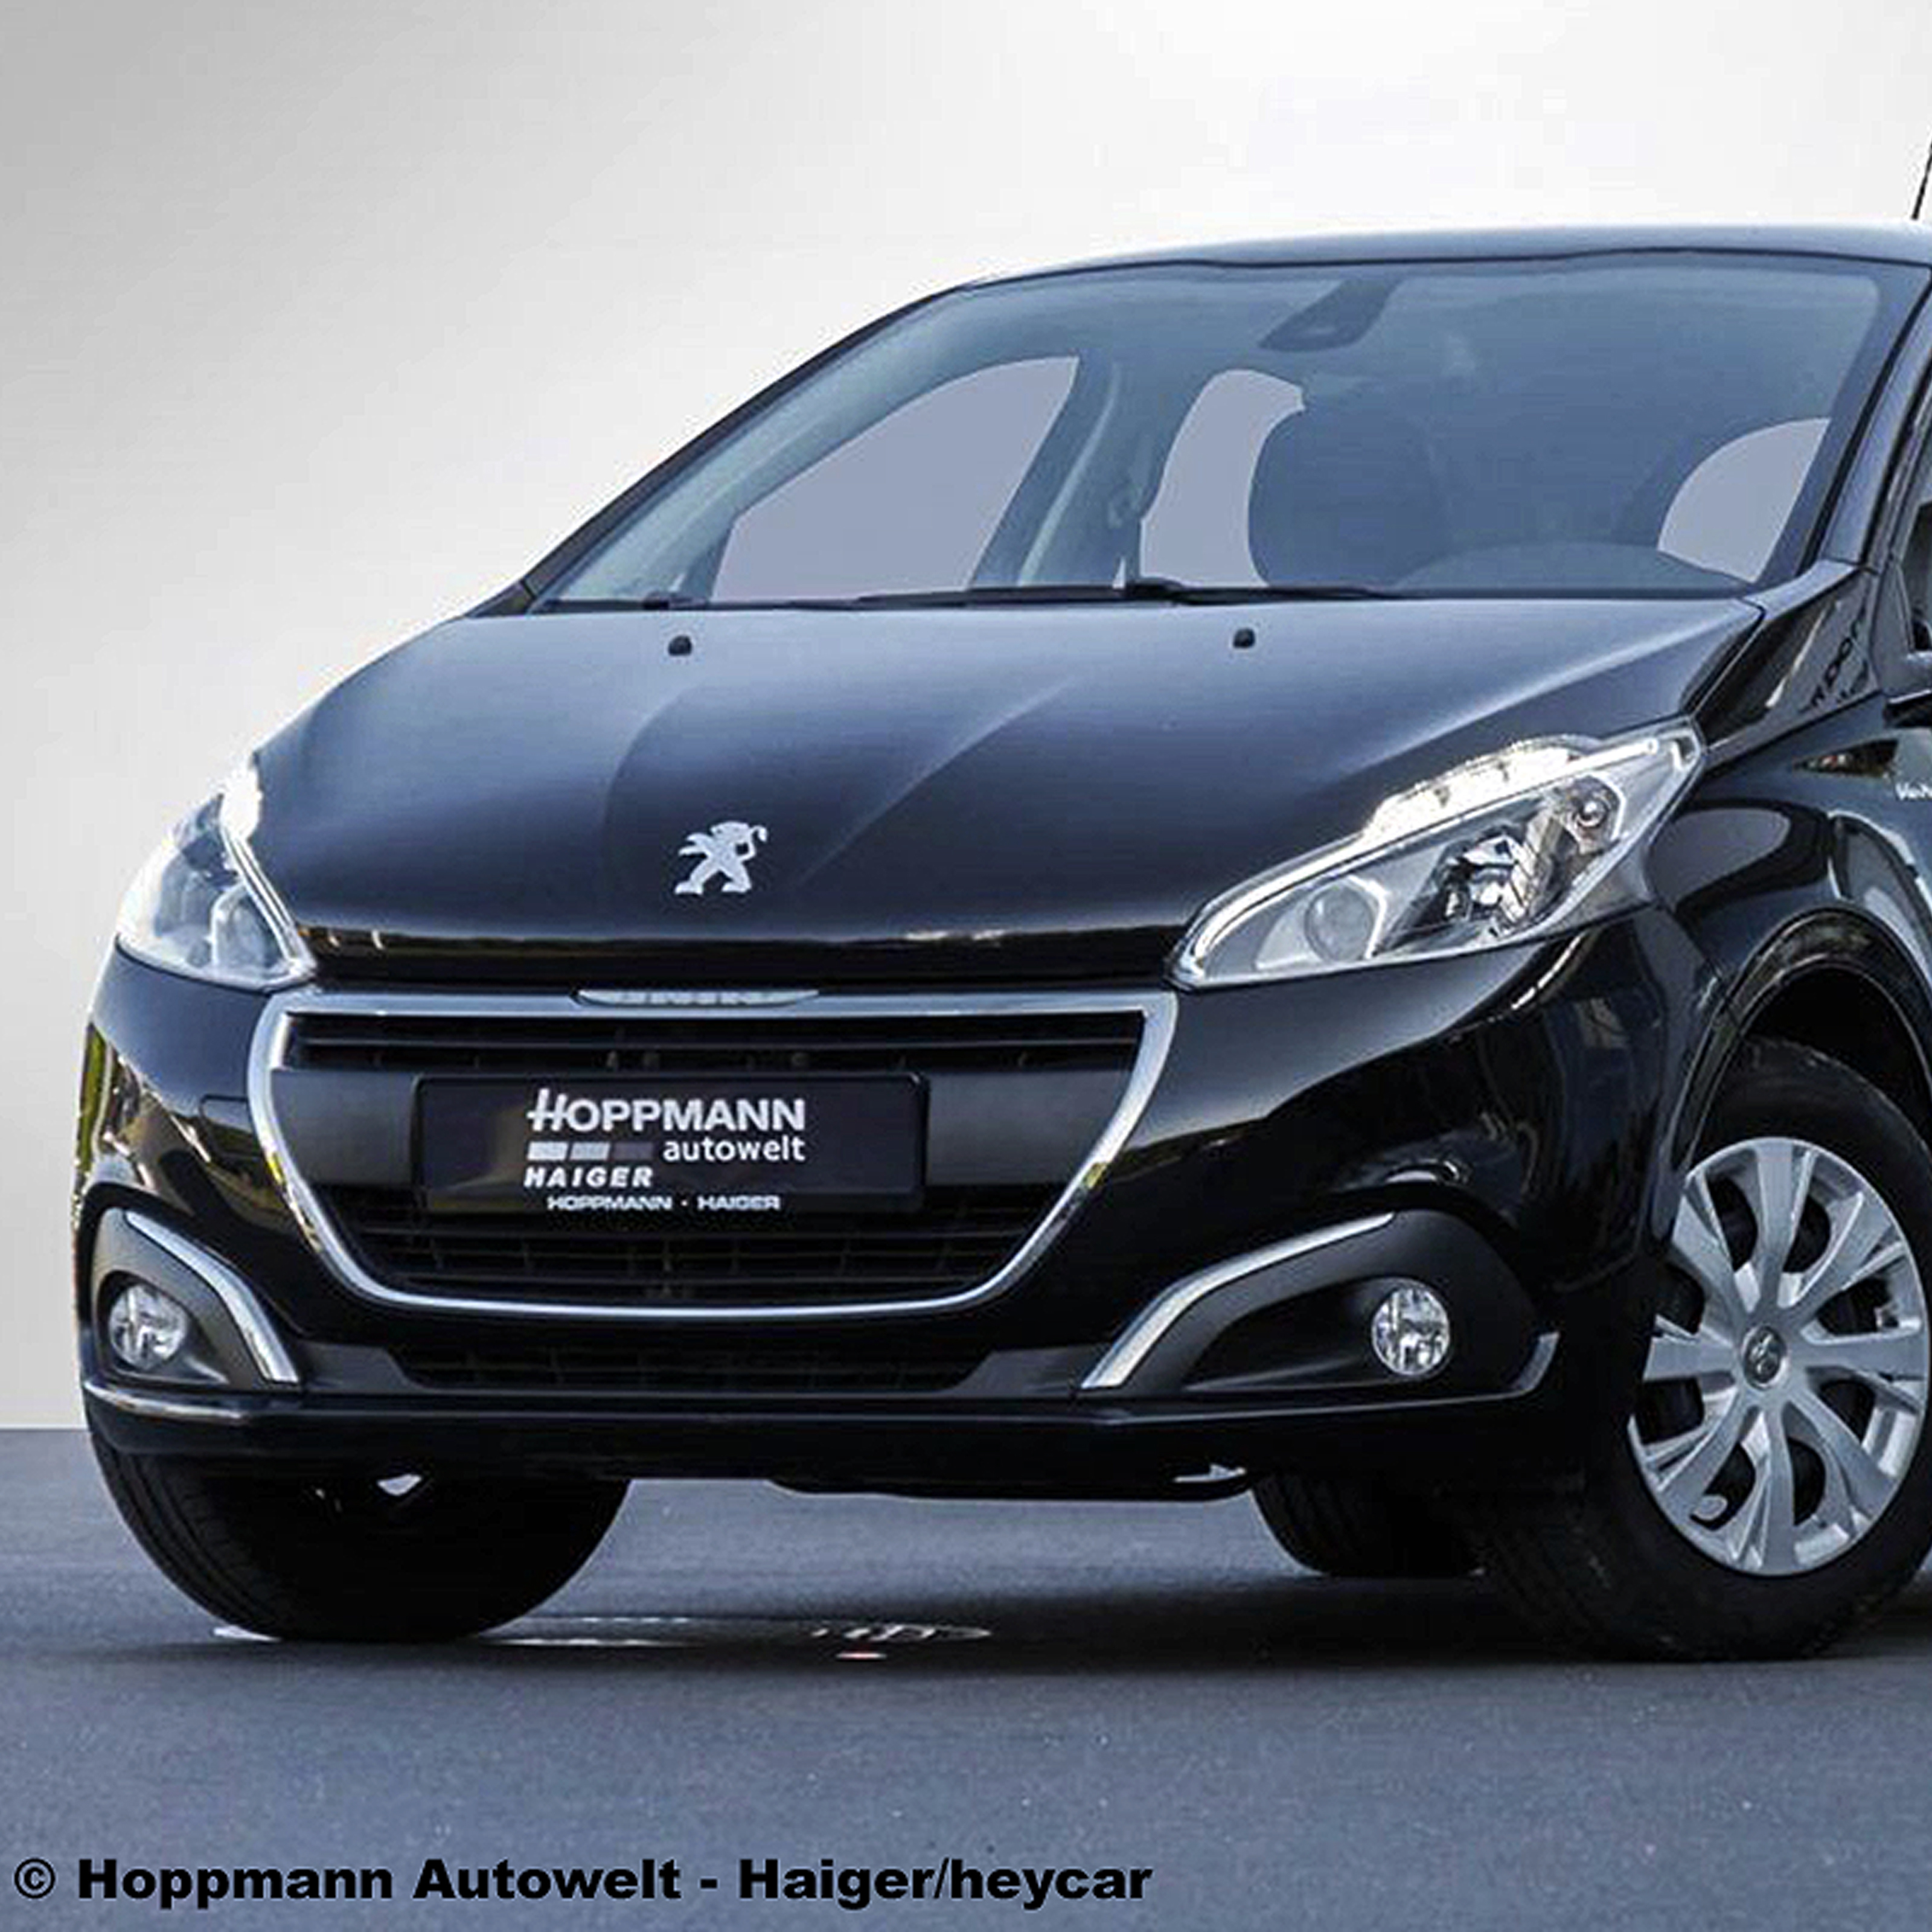 Peugeot 208: Schicker City-Flitzer für 185 Euro im Leasing - AUTO BILD